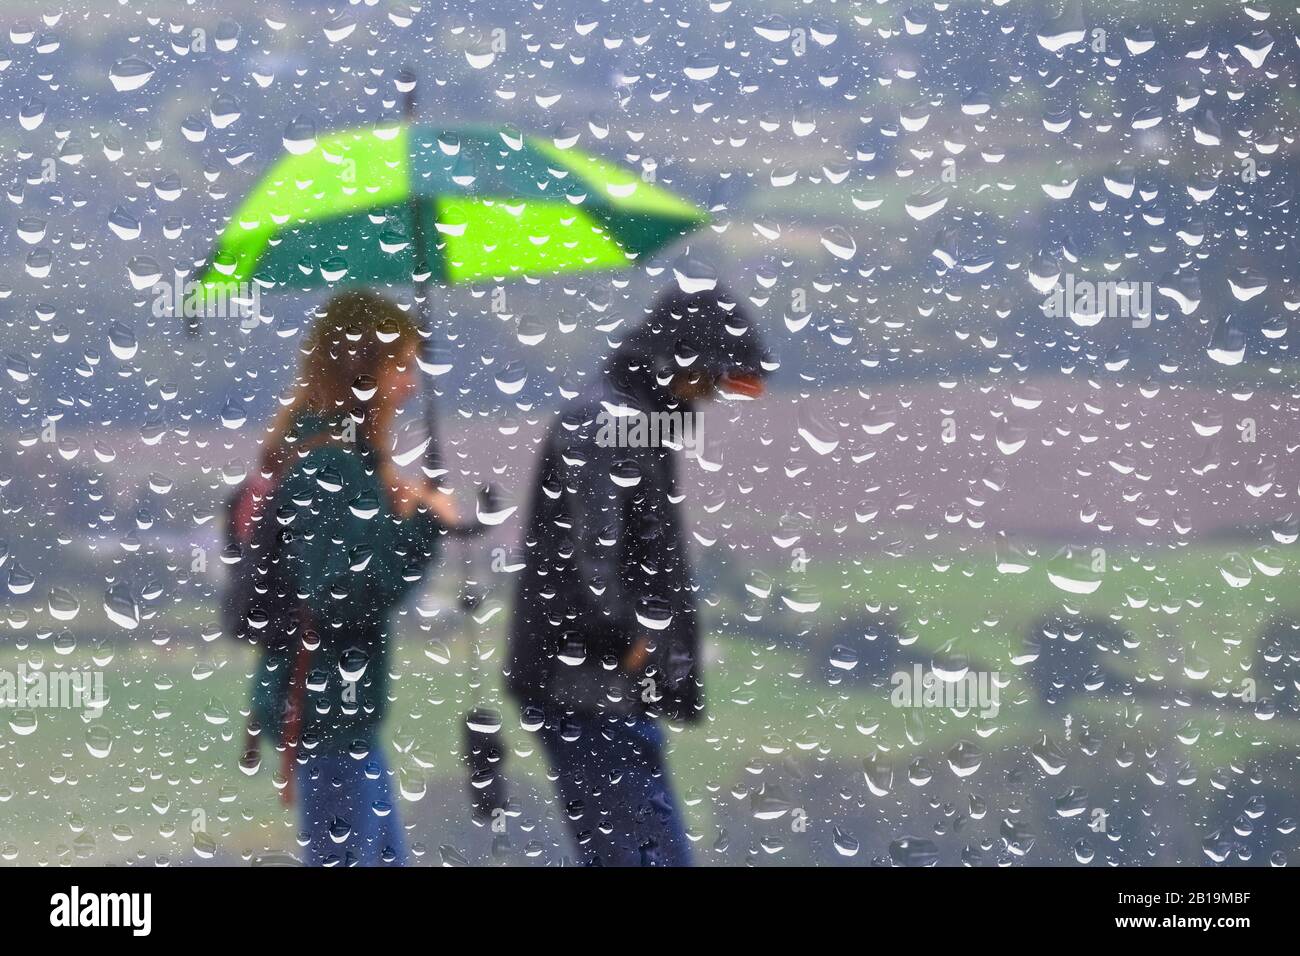 Zusammenfassung eines Paares, das mit einem Regenschirm in Regen läuft, durch ein Fenster mit Regentropfen gesehen. Feuchtes Wetter Großbritannien. Stockfoto